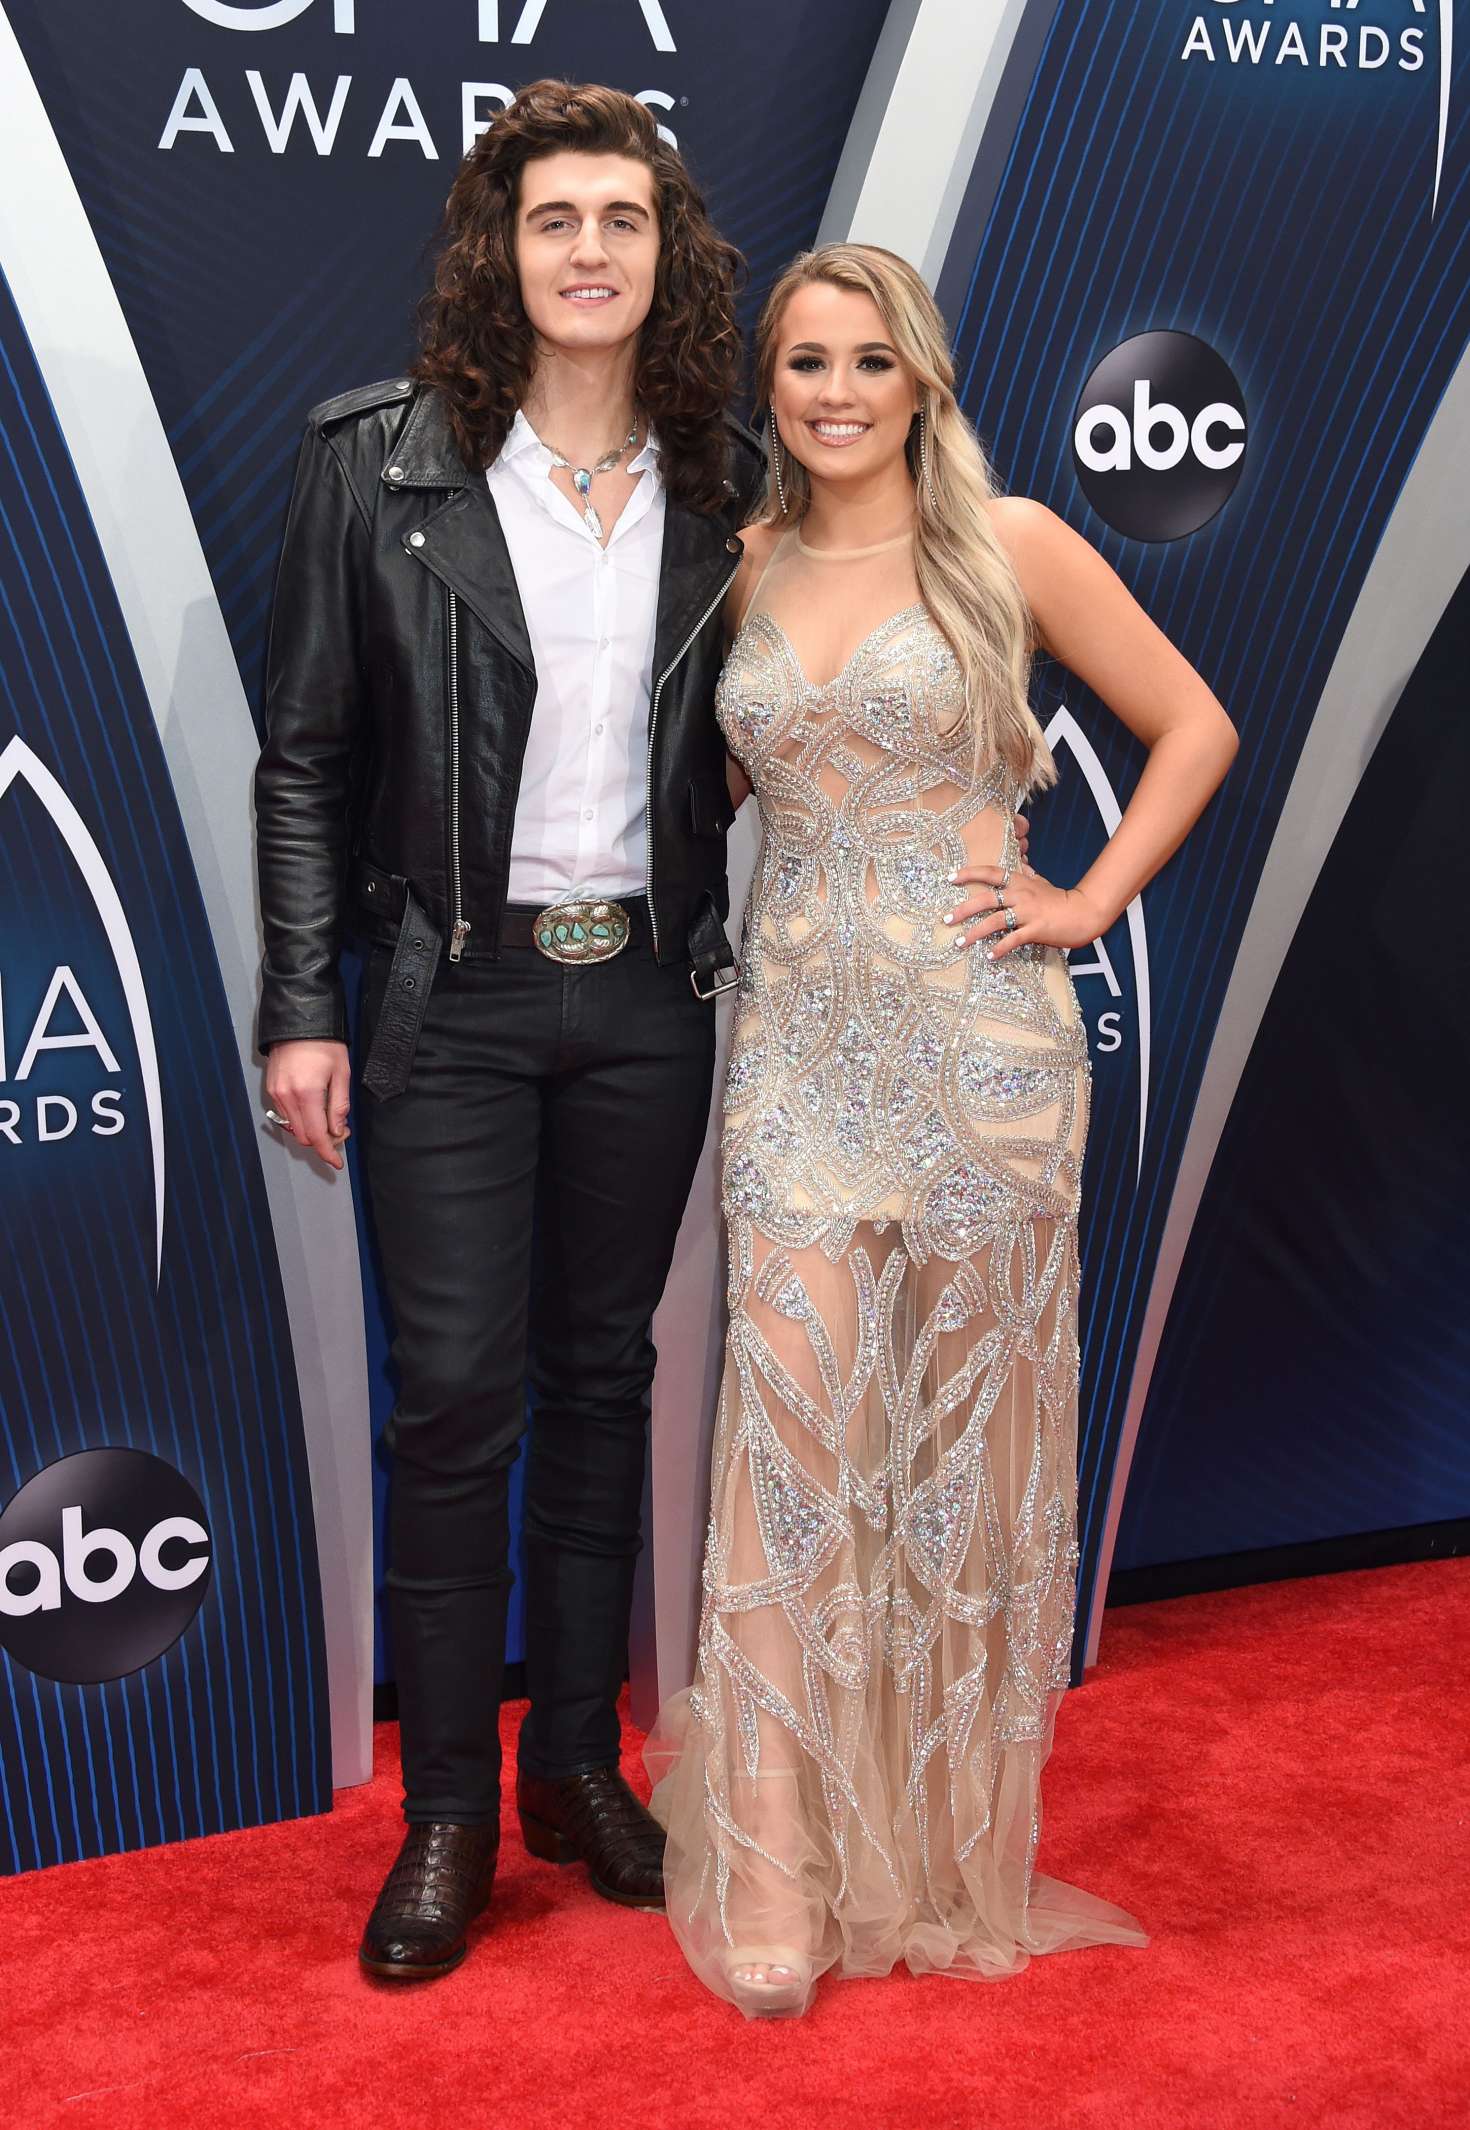 Cade Foehner and Gabby Barrett at the 2018 CMA Awards